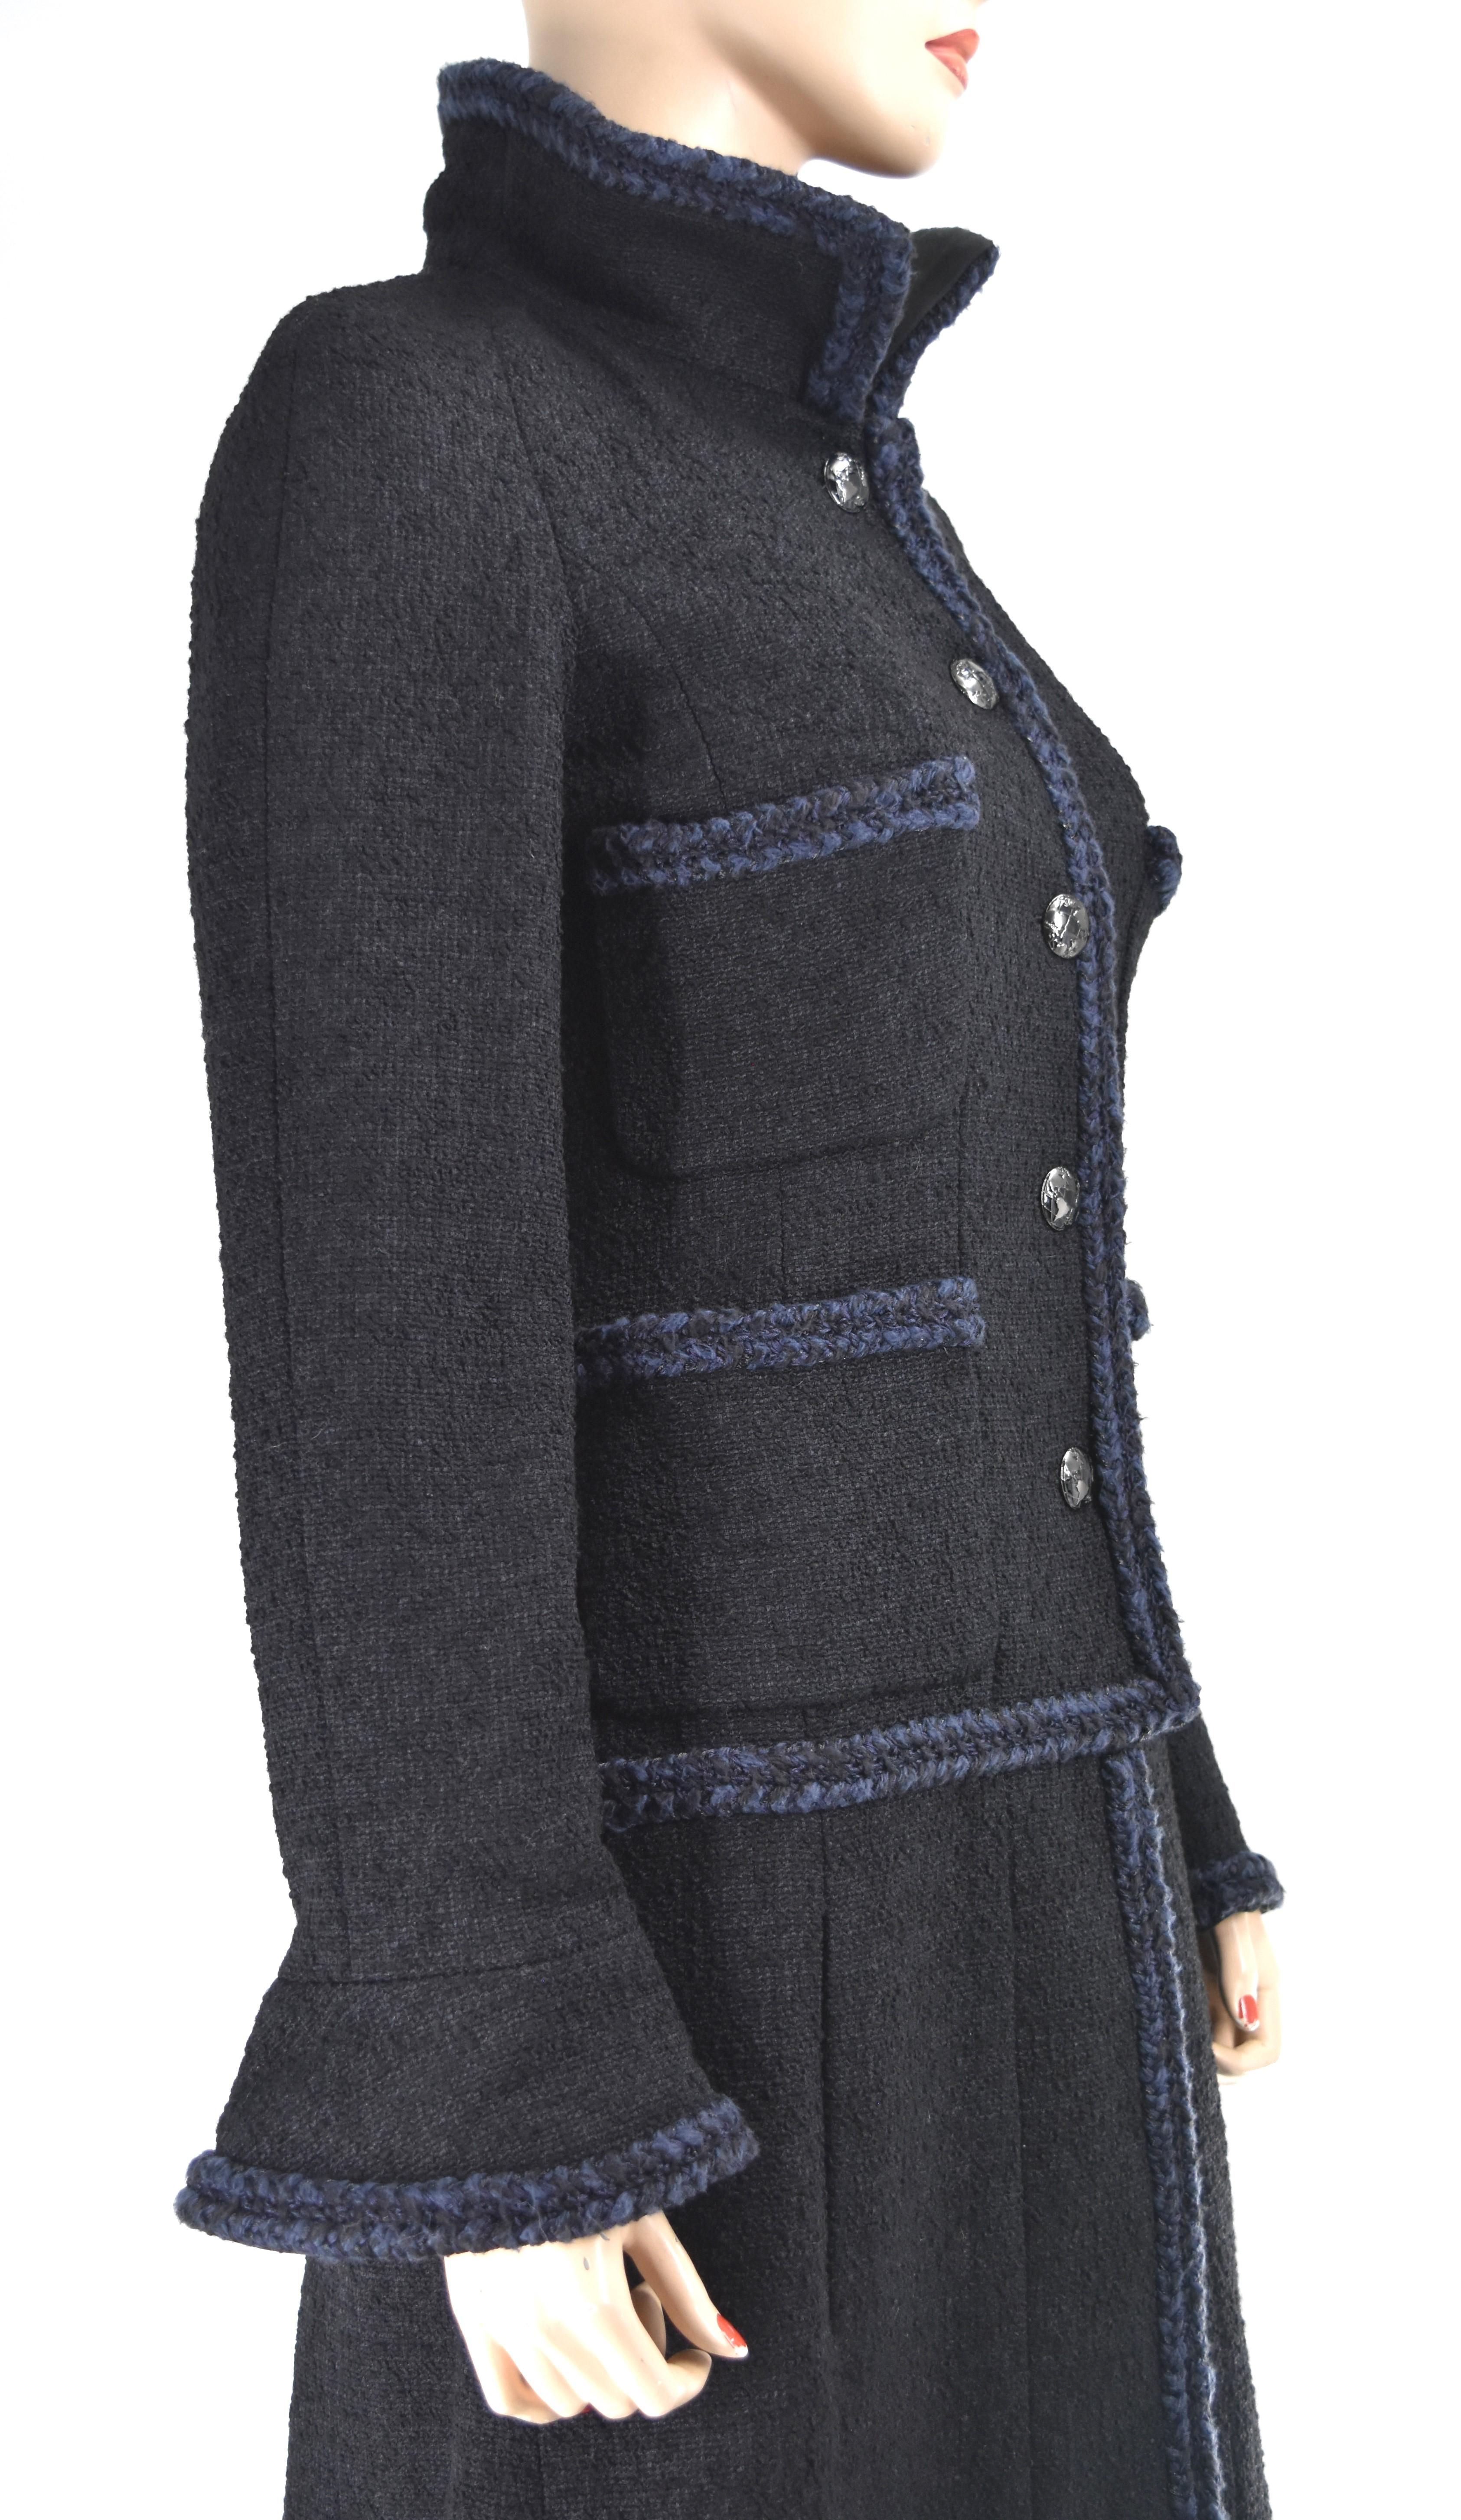 Chanel-Mantel aus der Chanel 13K-Laufstegkollektion. Sie ist mit geflochtenen Borten und Chanel-Knöpfen mit ineinandergreifendem CC-Logo verziert.  Es ist neu mit Tags.